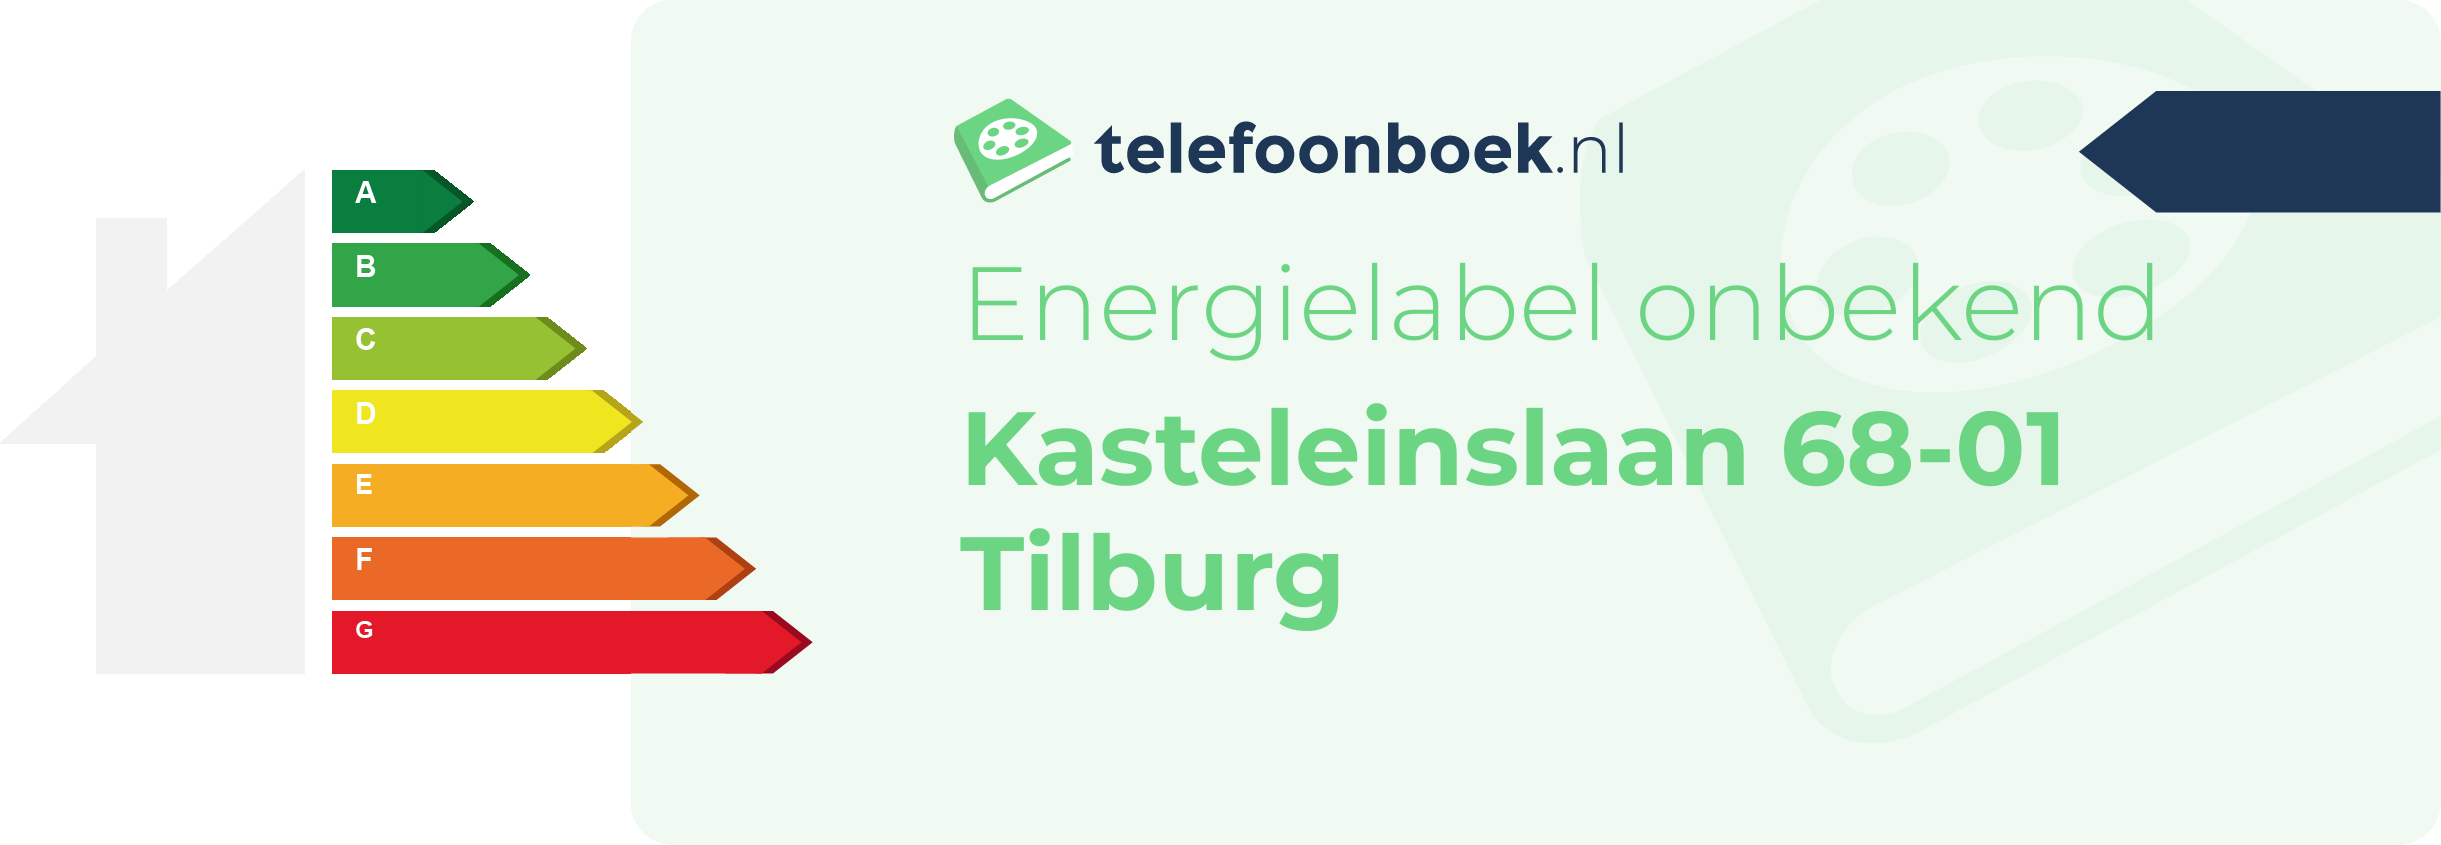 Energielabel Kasteleinslaan 68-01 Tilburg